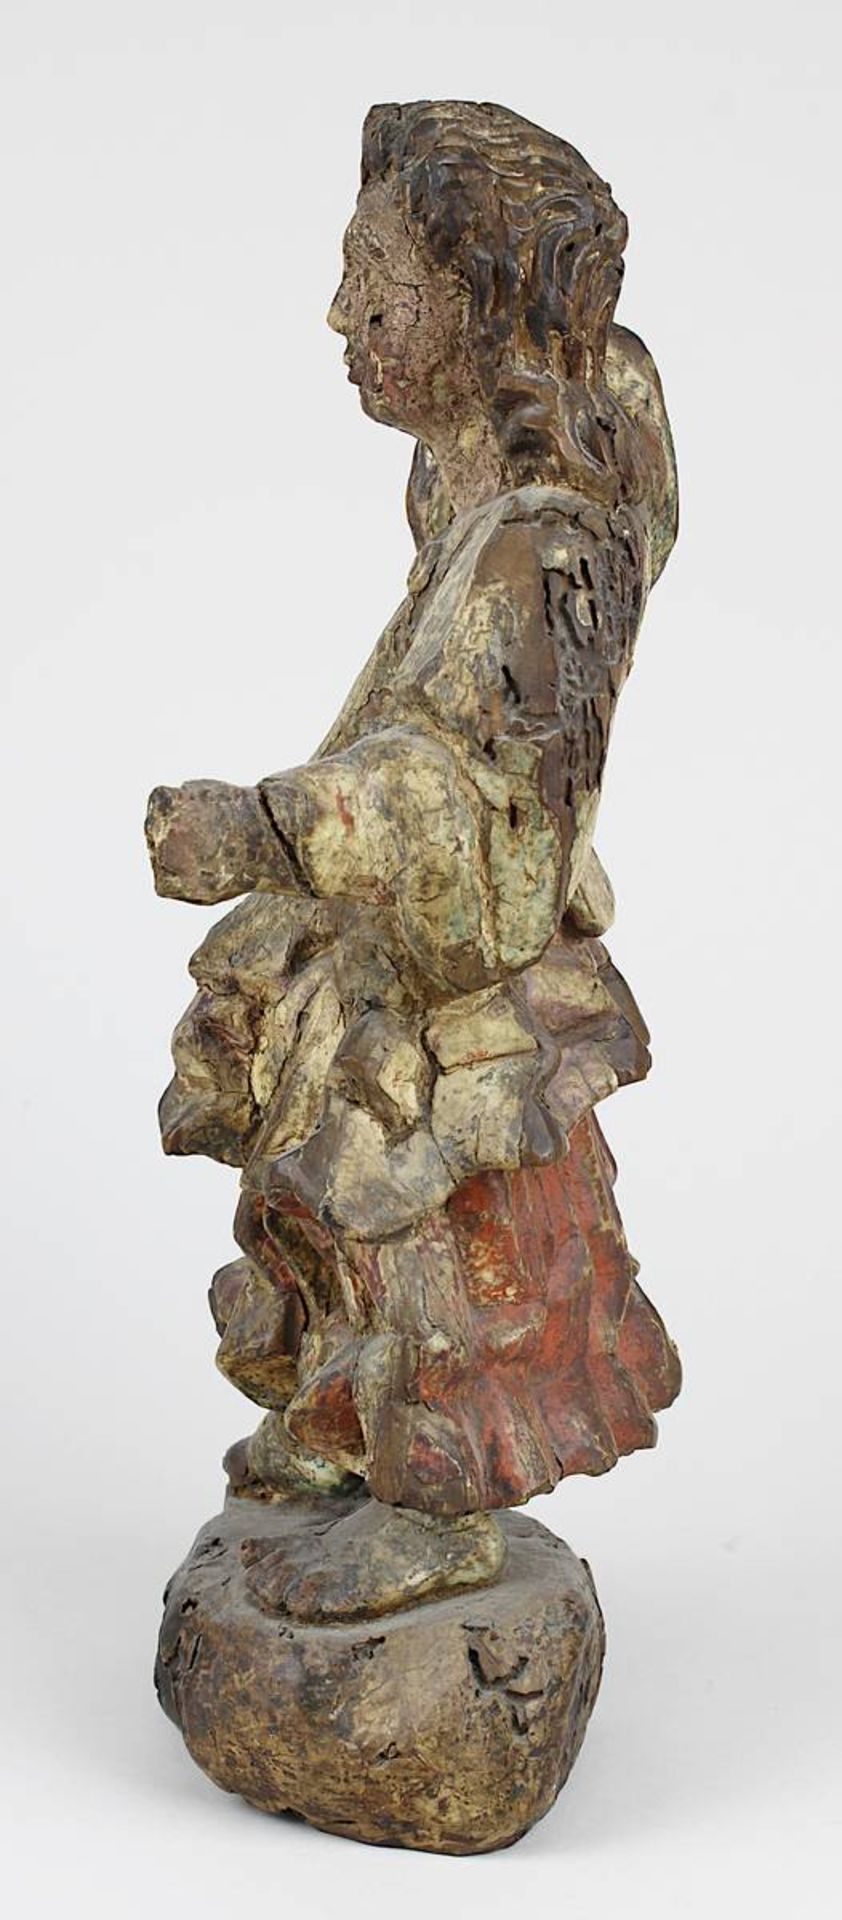 Engelsfigur aus Holz, kolonialspanisch 18. Jh., Holz geschnitzt und mit Resten der farbigen Fassung, - Bild 2 aus 4